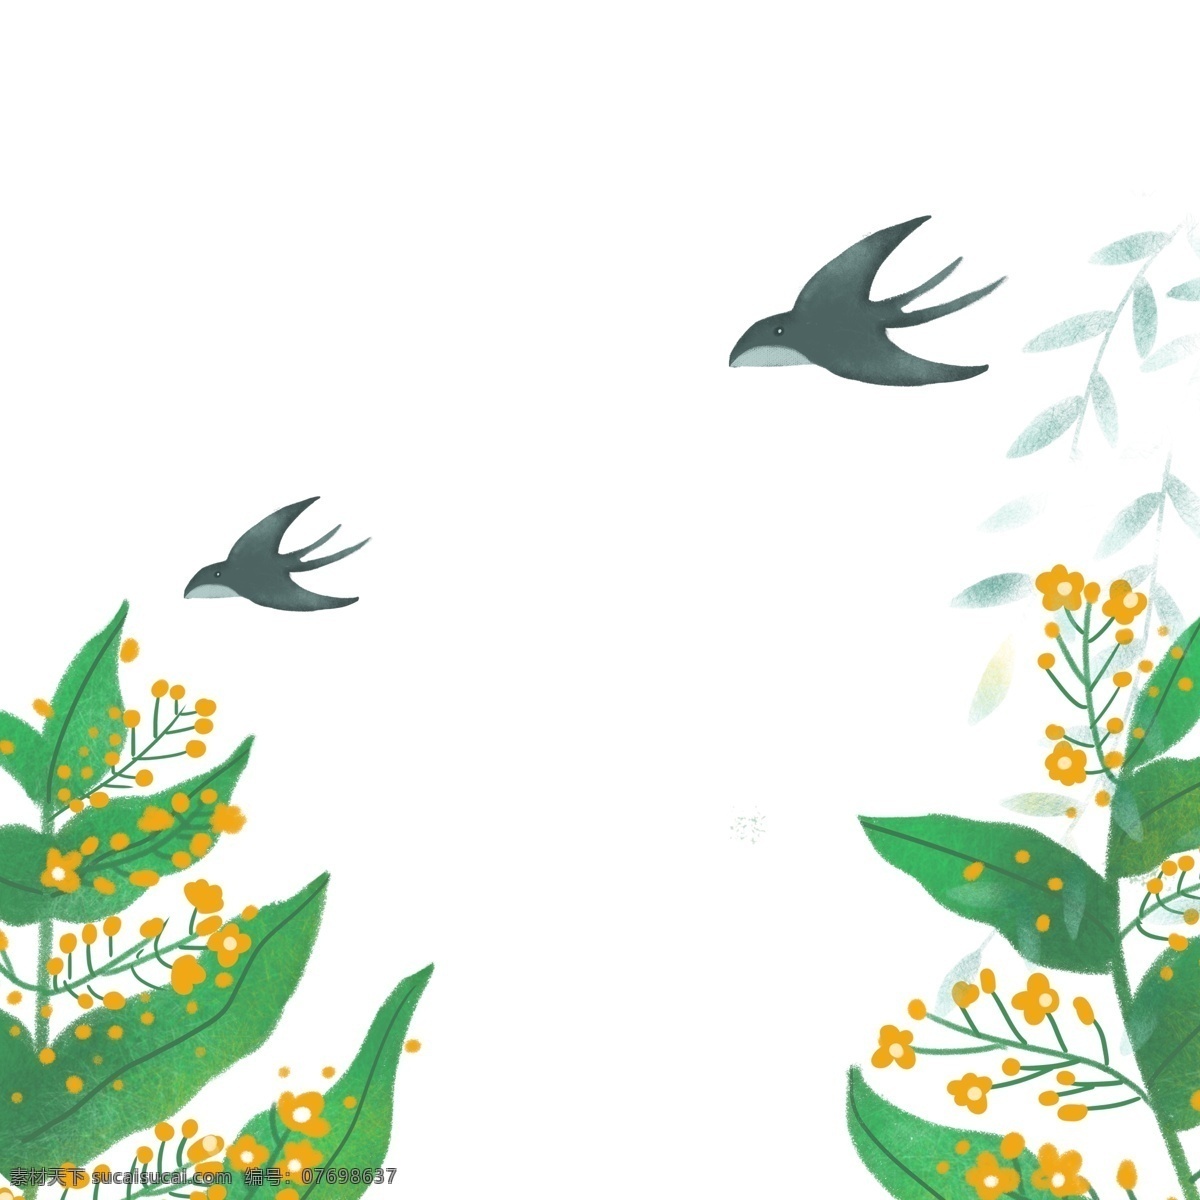 春天 植物 燕子 图案 树叶 小燕子 手绘 绘画 简约 创意 小清新 装饰 水彩 插画